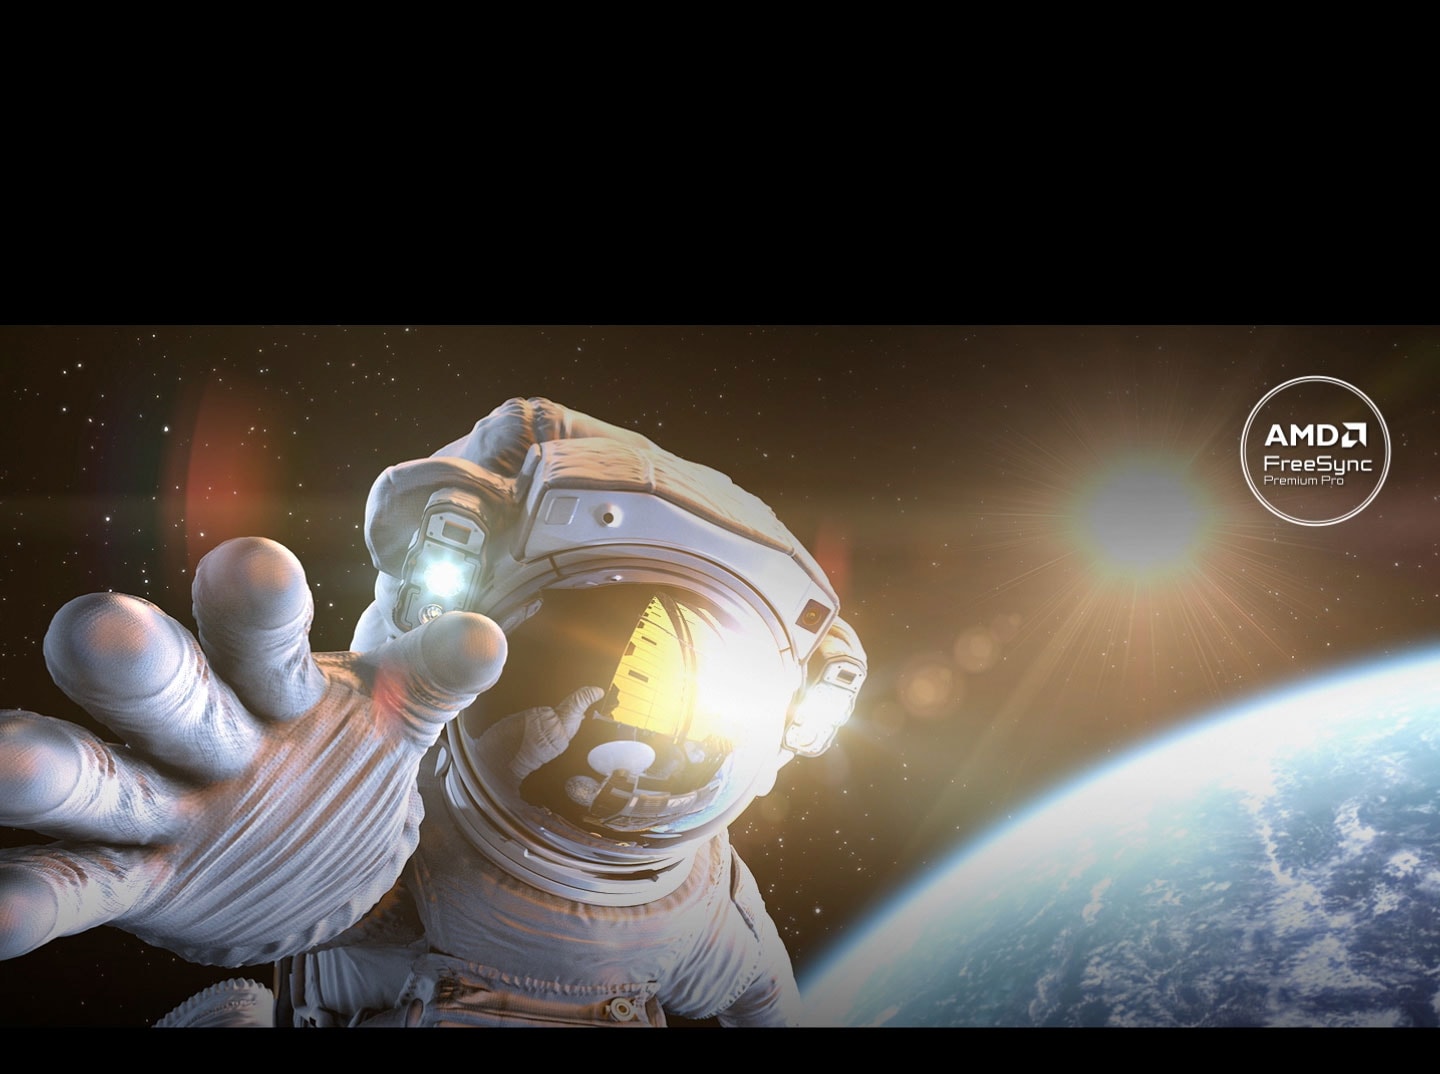 Auf dem Bildschirm ist ein Astronaut im Weltraum mit der Erde und der Sonne im Hintergrund zu sehen. Auf der rechten Seite gibt es Tearing, aber die linke Seite ist dank AMD FreeSync Premium Pro klar. Das Logo befindet sich oben. Der gesamte Bildschirm wird mit AMD FreeSync Premium Pro Technologie geglättet.